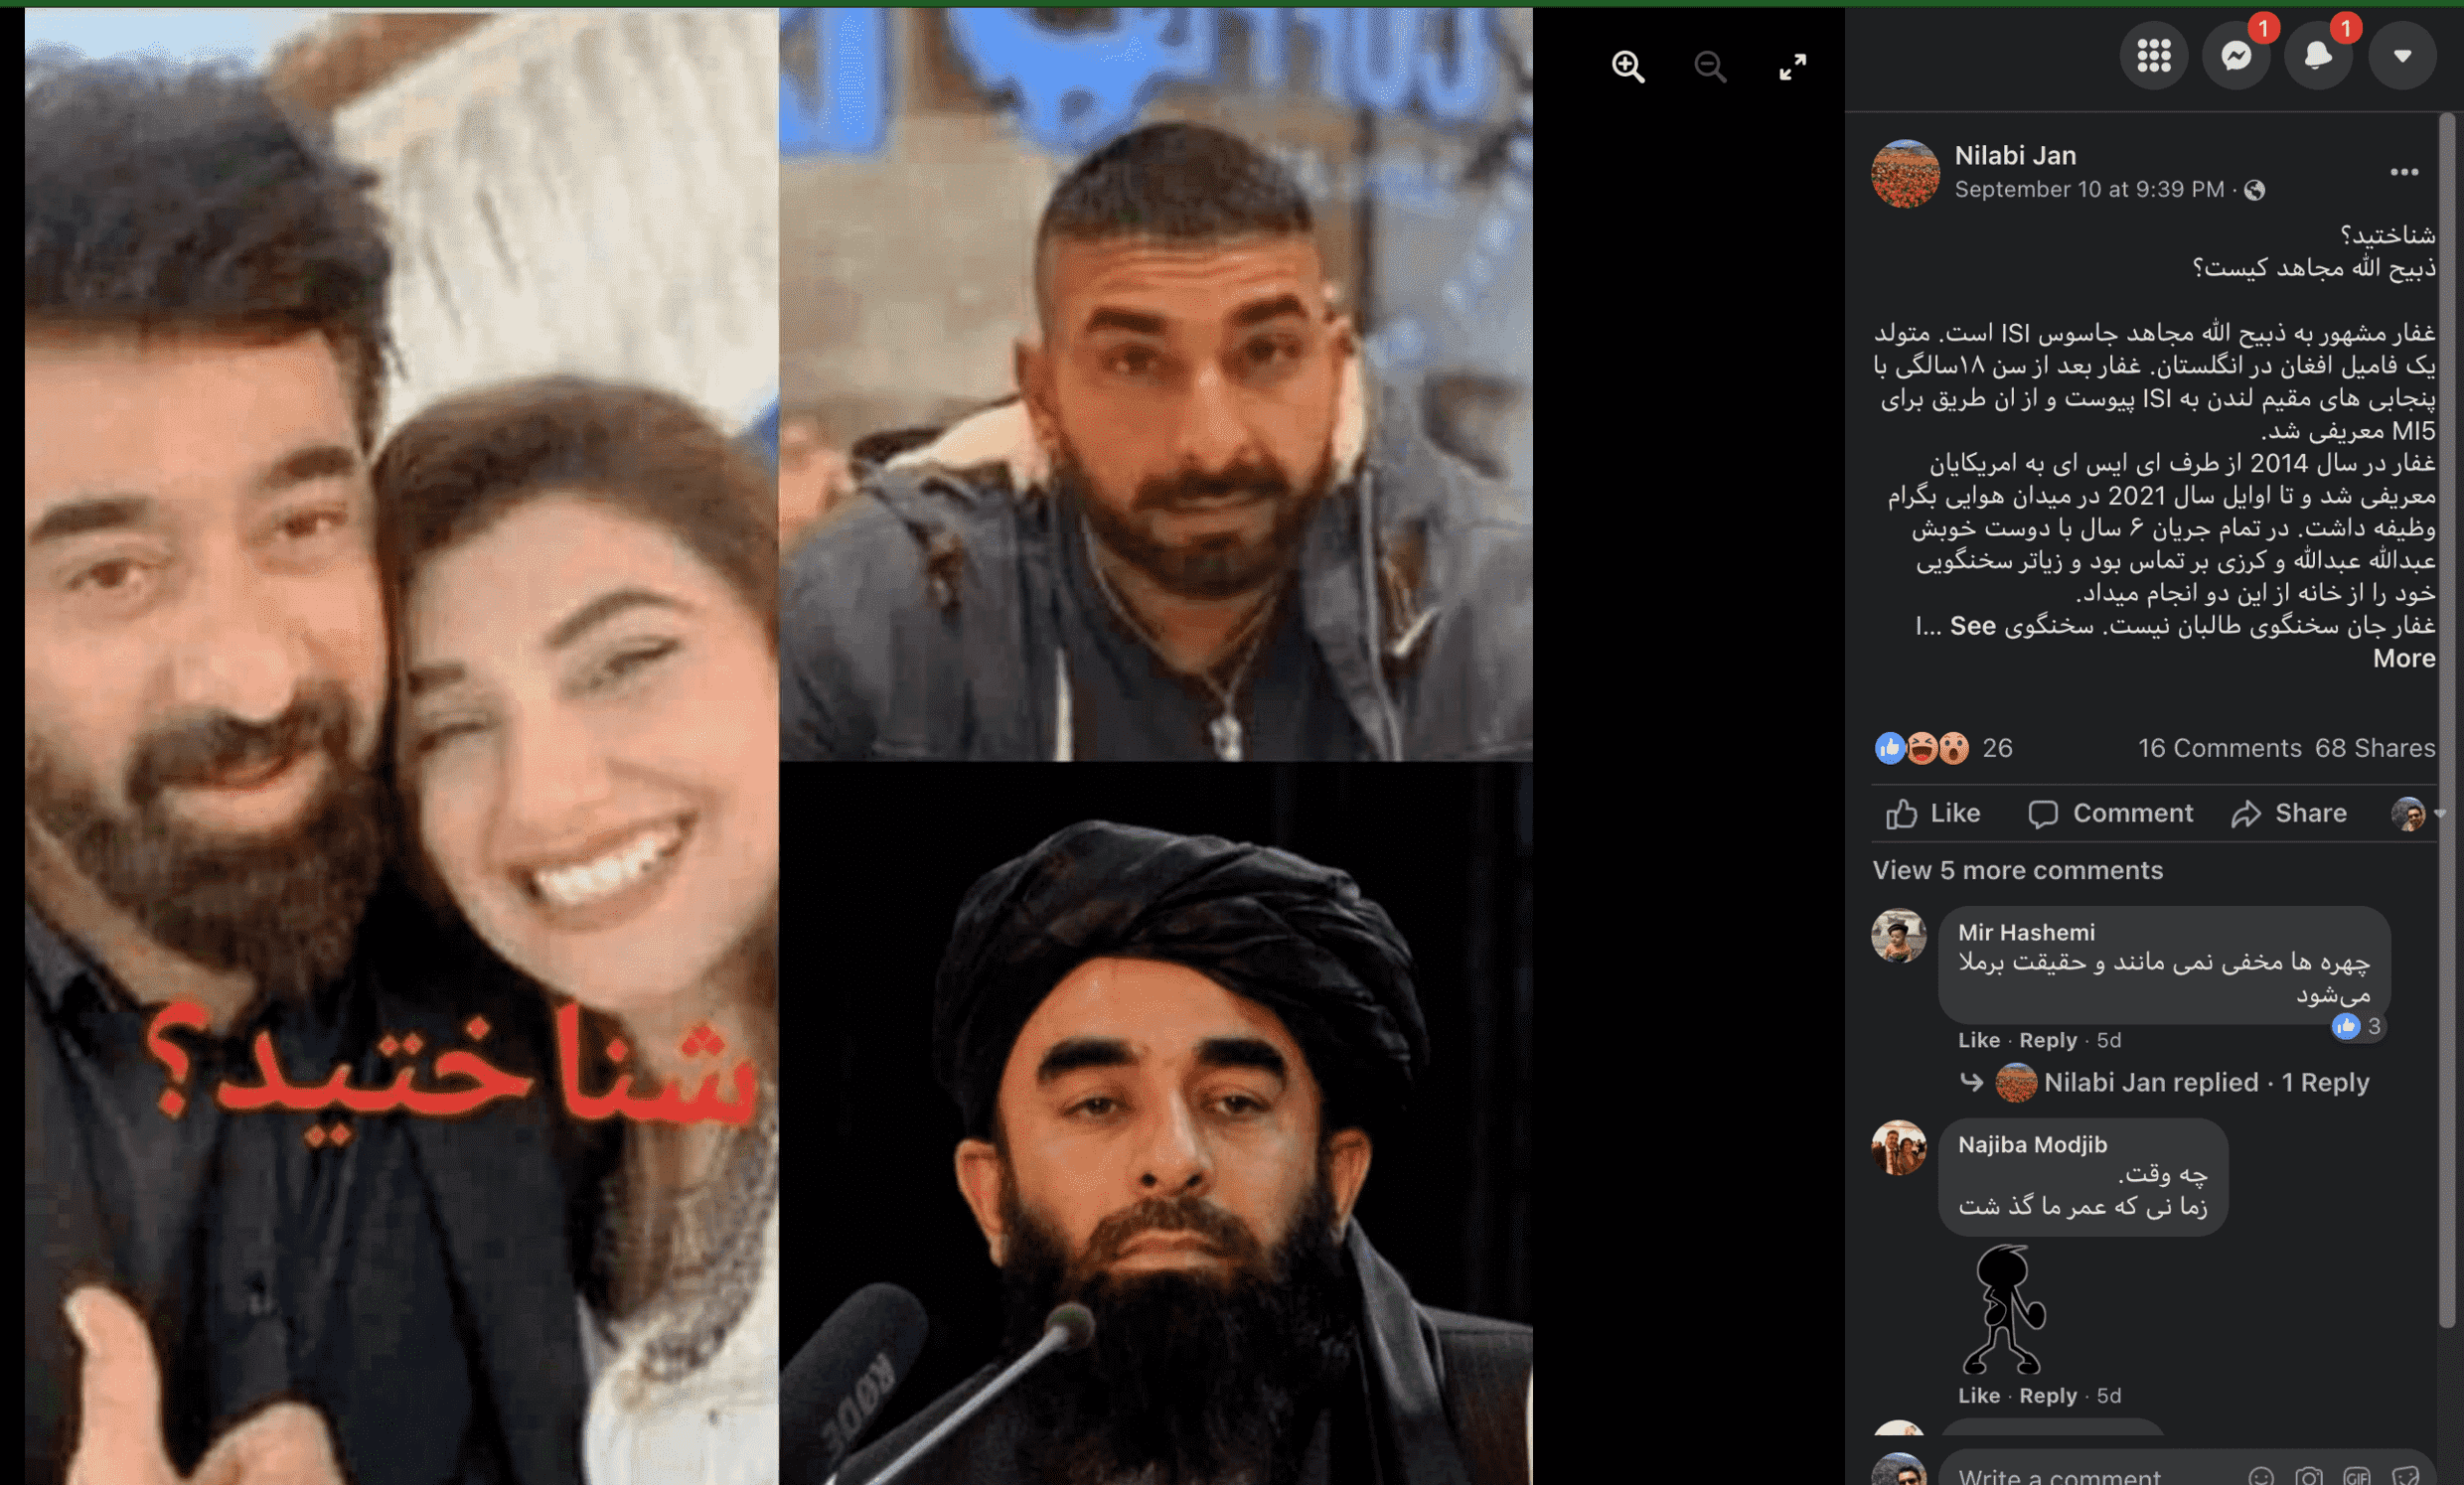 In dieser Fotomontage, die in den sozialen Netzwerken in Afghanistan kursiert, ist der Mann mit dem schwarzen Turban unten rechts Taliban-Sprecher Zabihullah Mujahid.  Der Mann auf der linken Seite ist der pakistanische Schauspieler Yasir Nawaz, der mit einem Schauspielerkollegen auf der Geburtstagsfeier seiner Frau posiert.  Der dritte Mann wurde nicht identifiziert, aber eine Gesichtserkennungssoftware zeigt, dass er auch kein Mujahid ist.